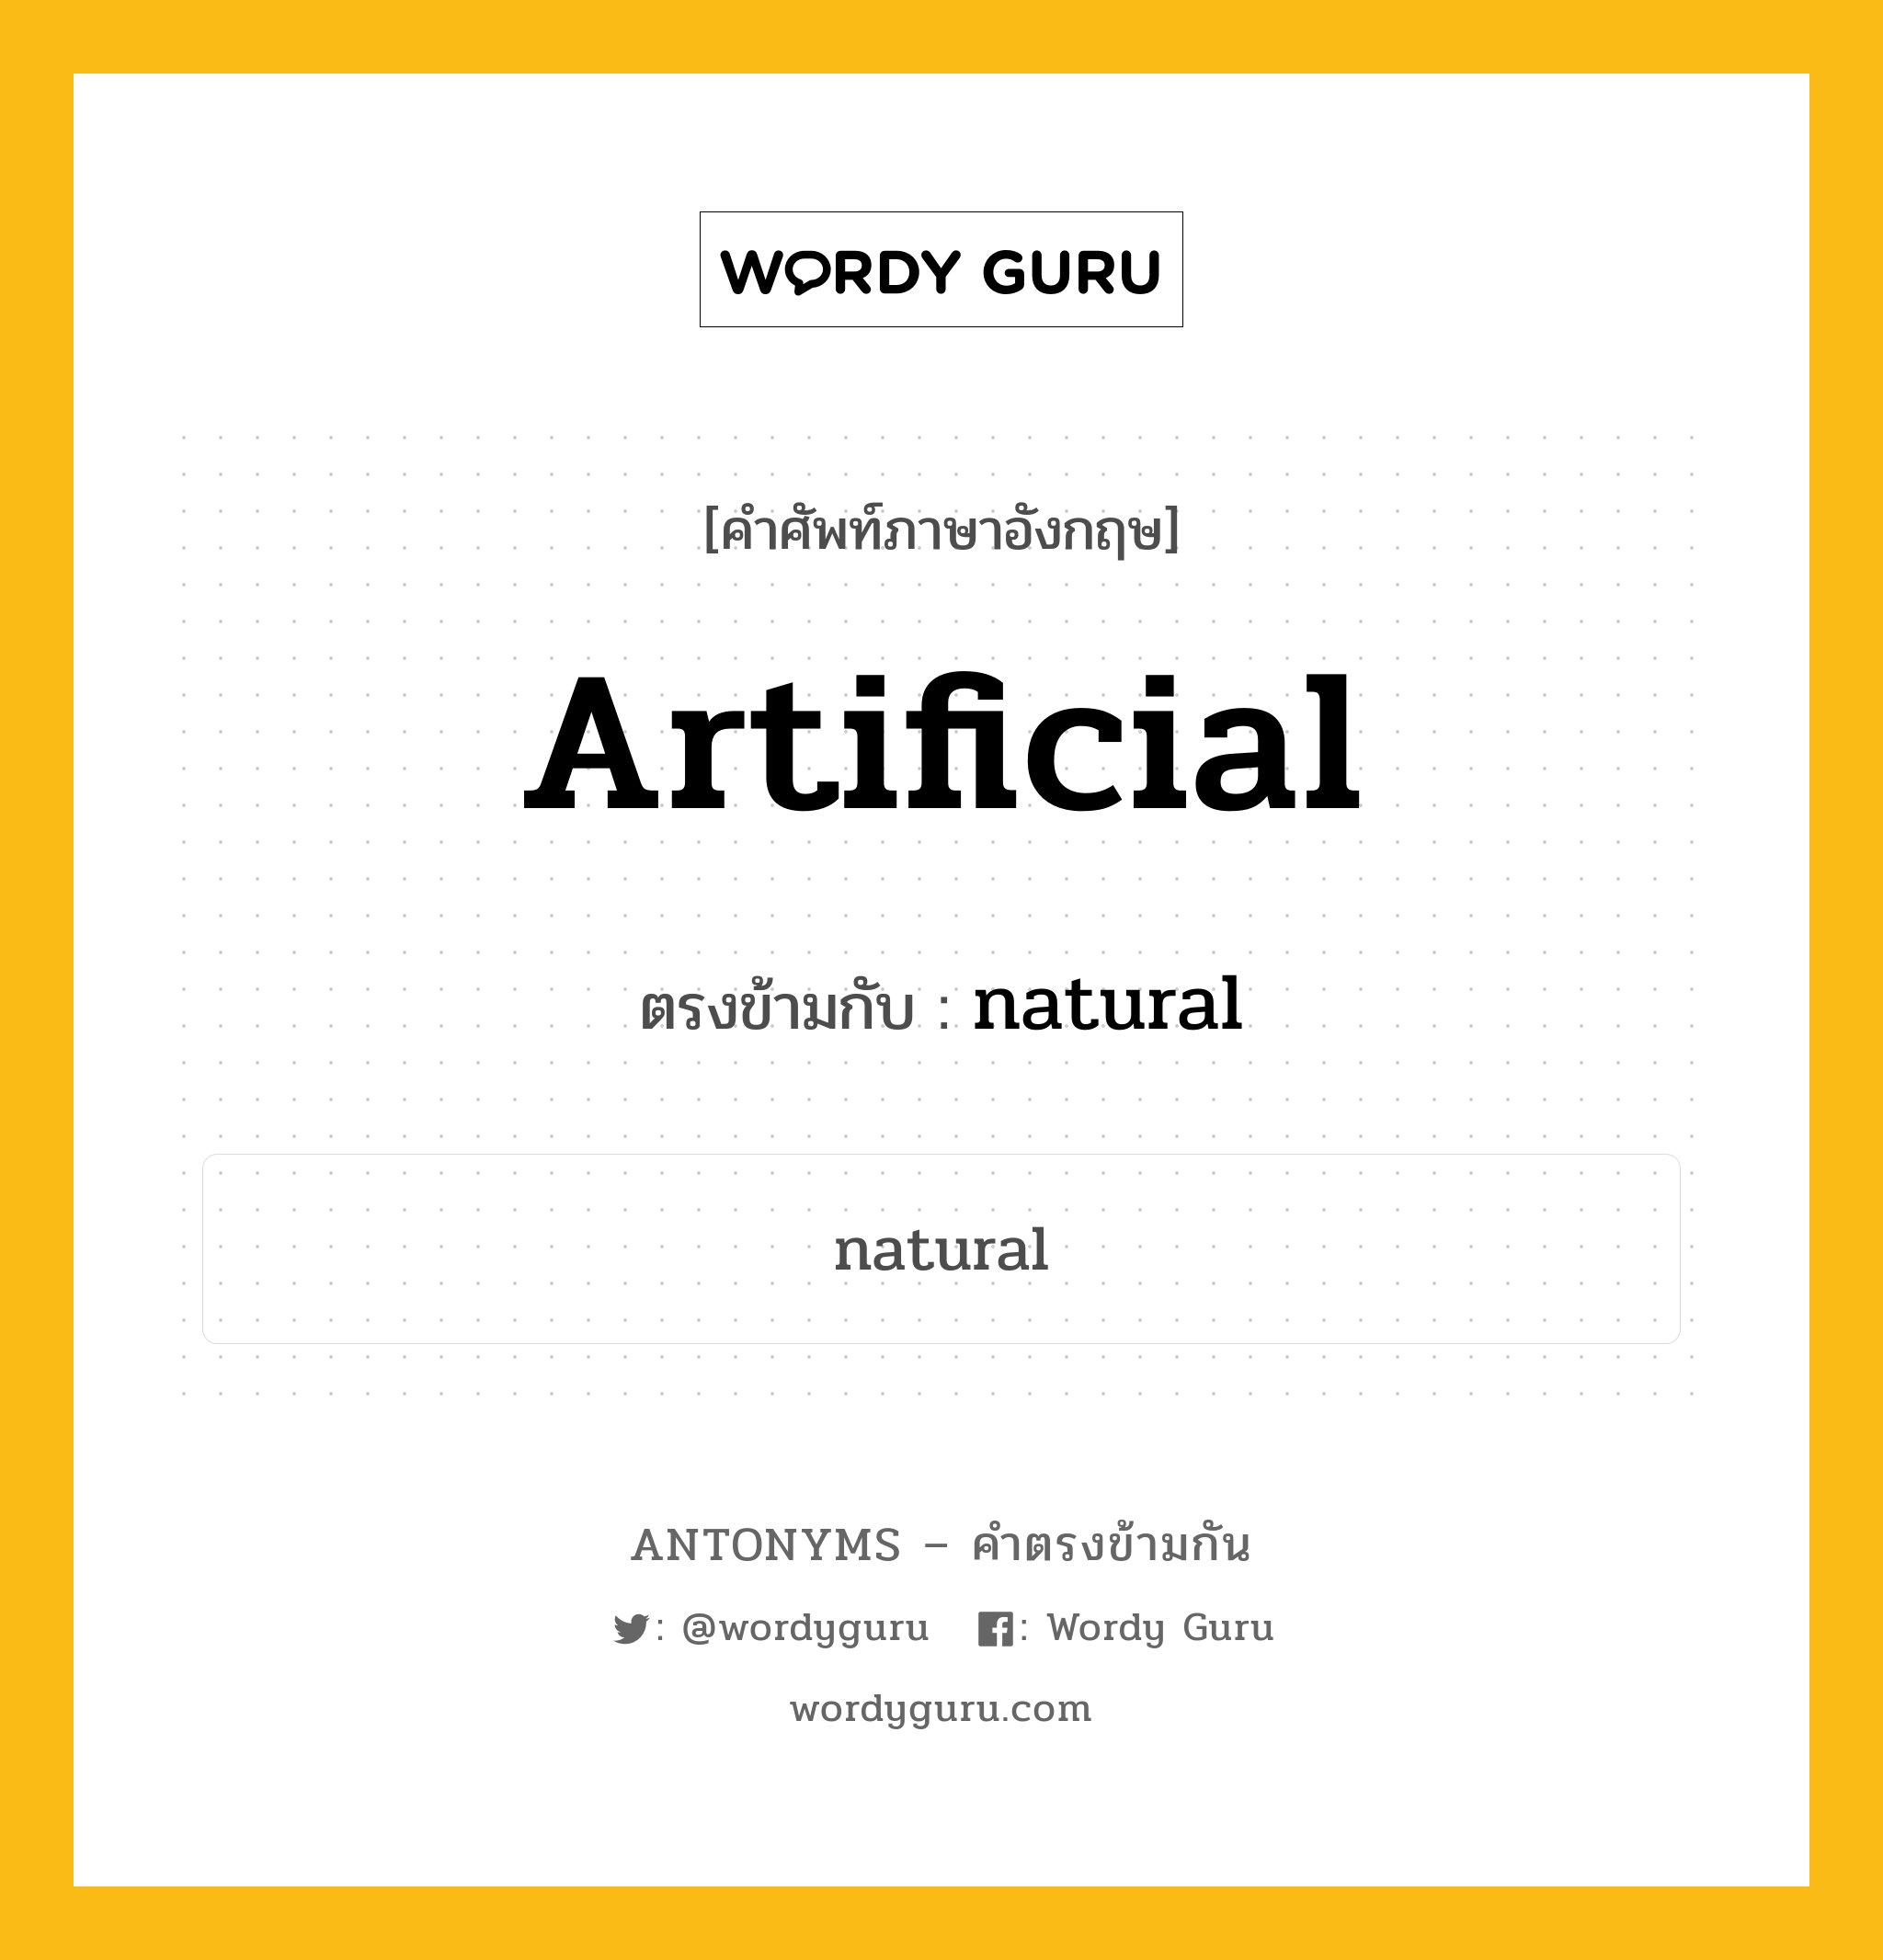 artificial เป็นคำตรงข้ามกับคำไหนบ้าง?, คำศัพท์ภาษาอังกฤษ artificial ตรงข้ามกับ natural หมวด natural